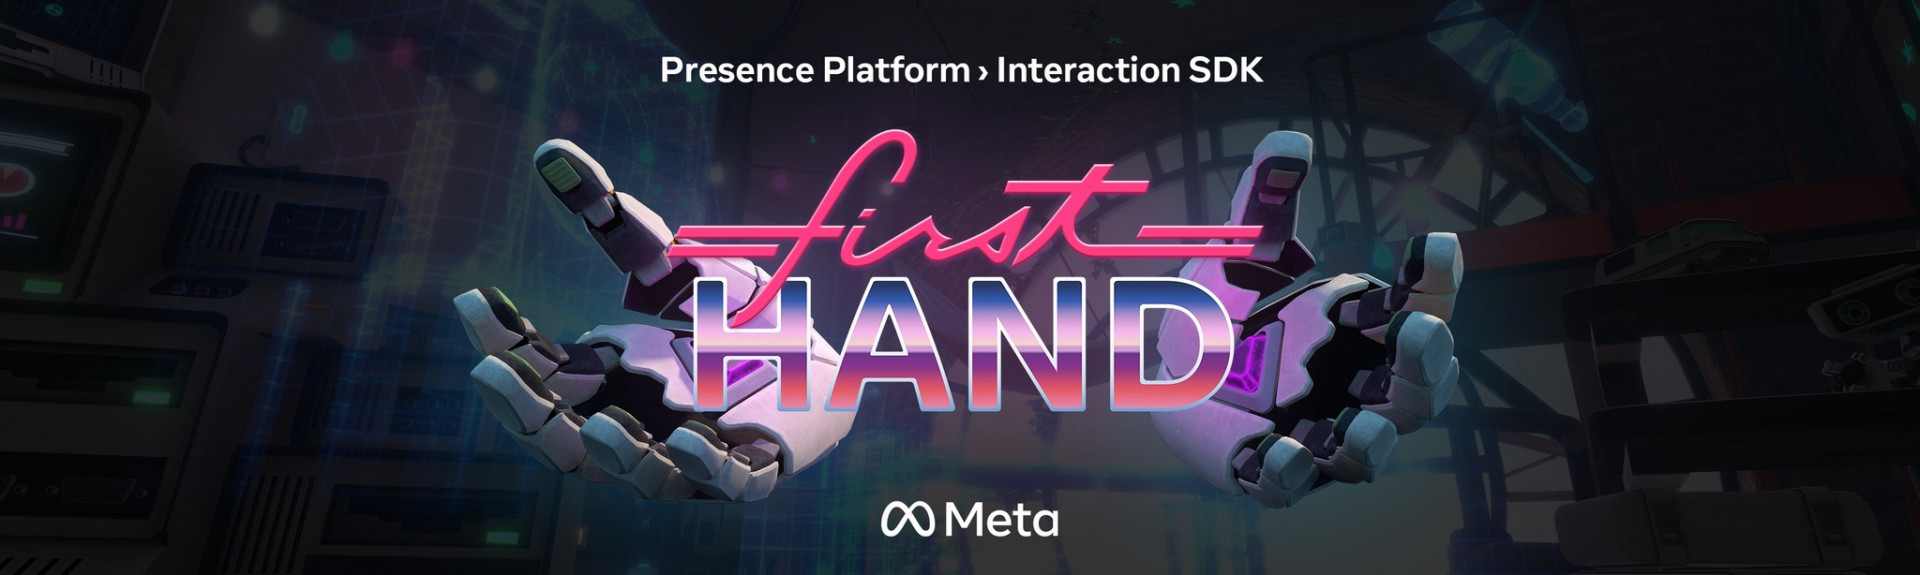 First Hand, demo oficial de Meta dedicada al seguimiento de manos